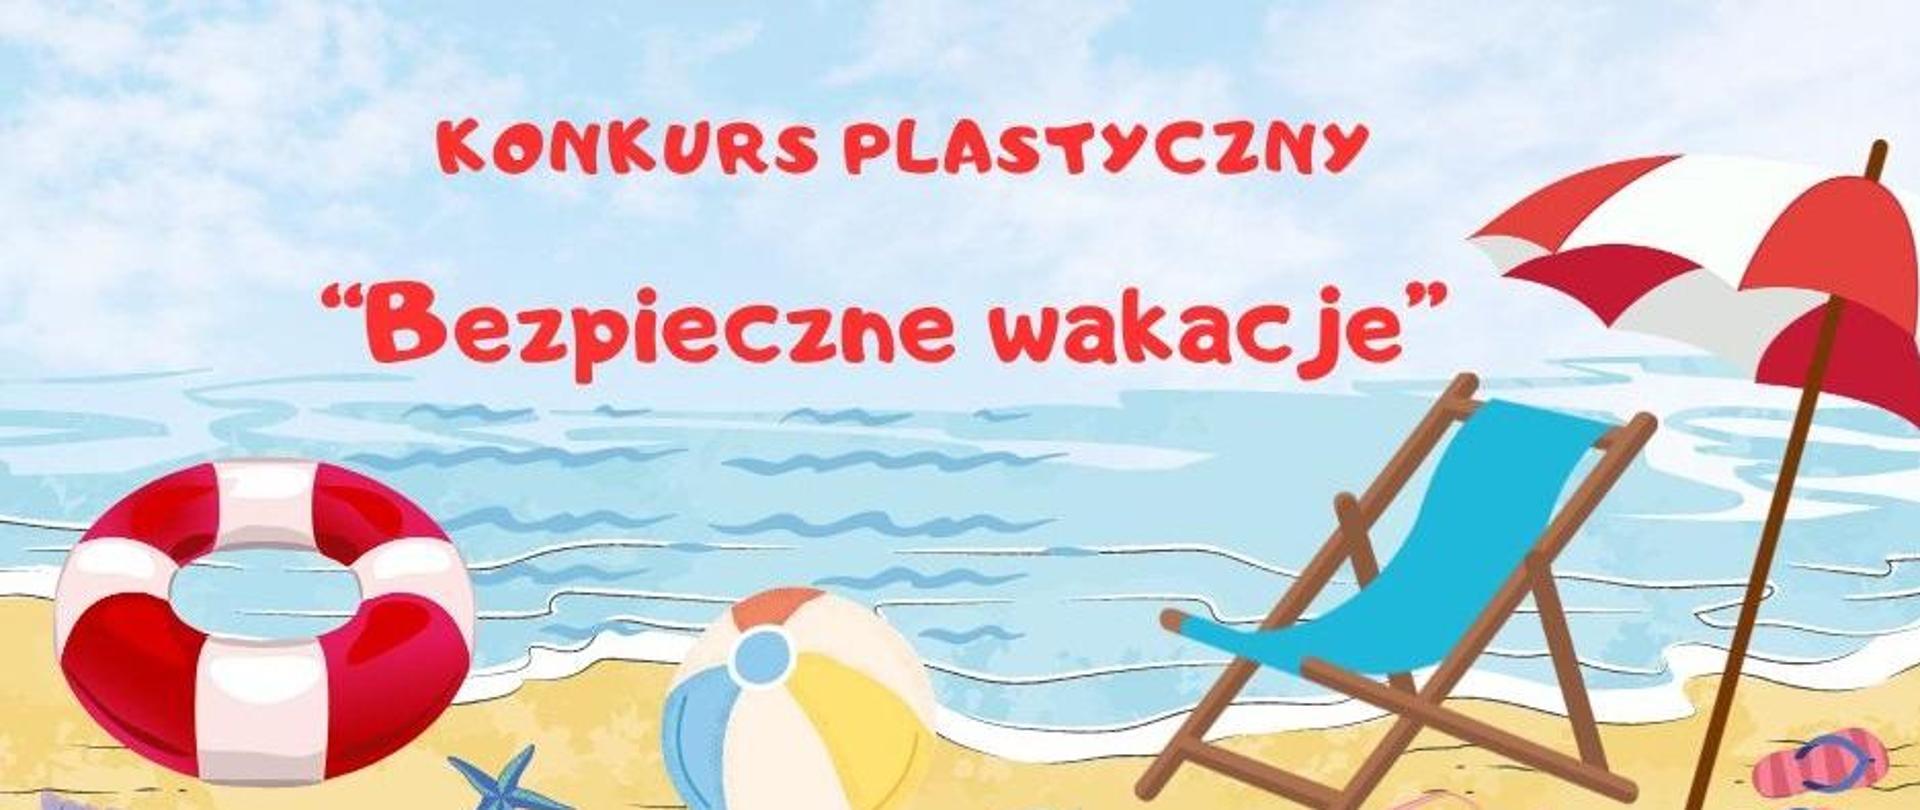 Konkurs plastyczny dla dzieci pt. „Bezpieczne wakacje”